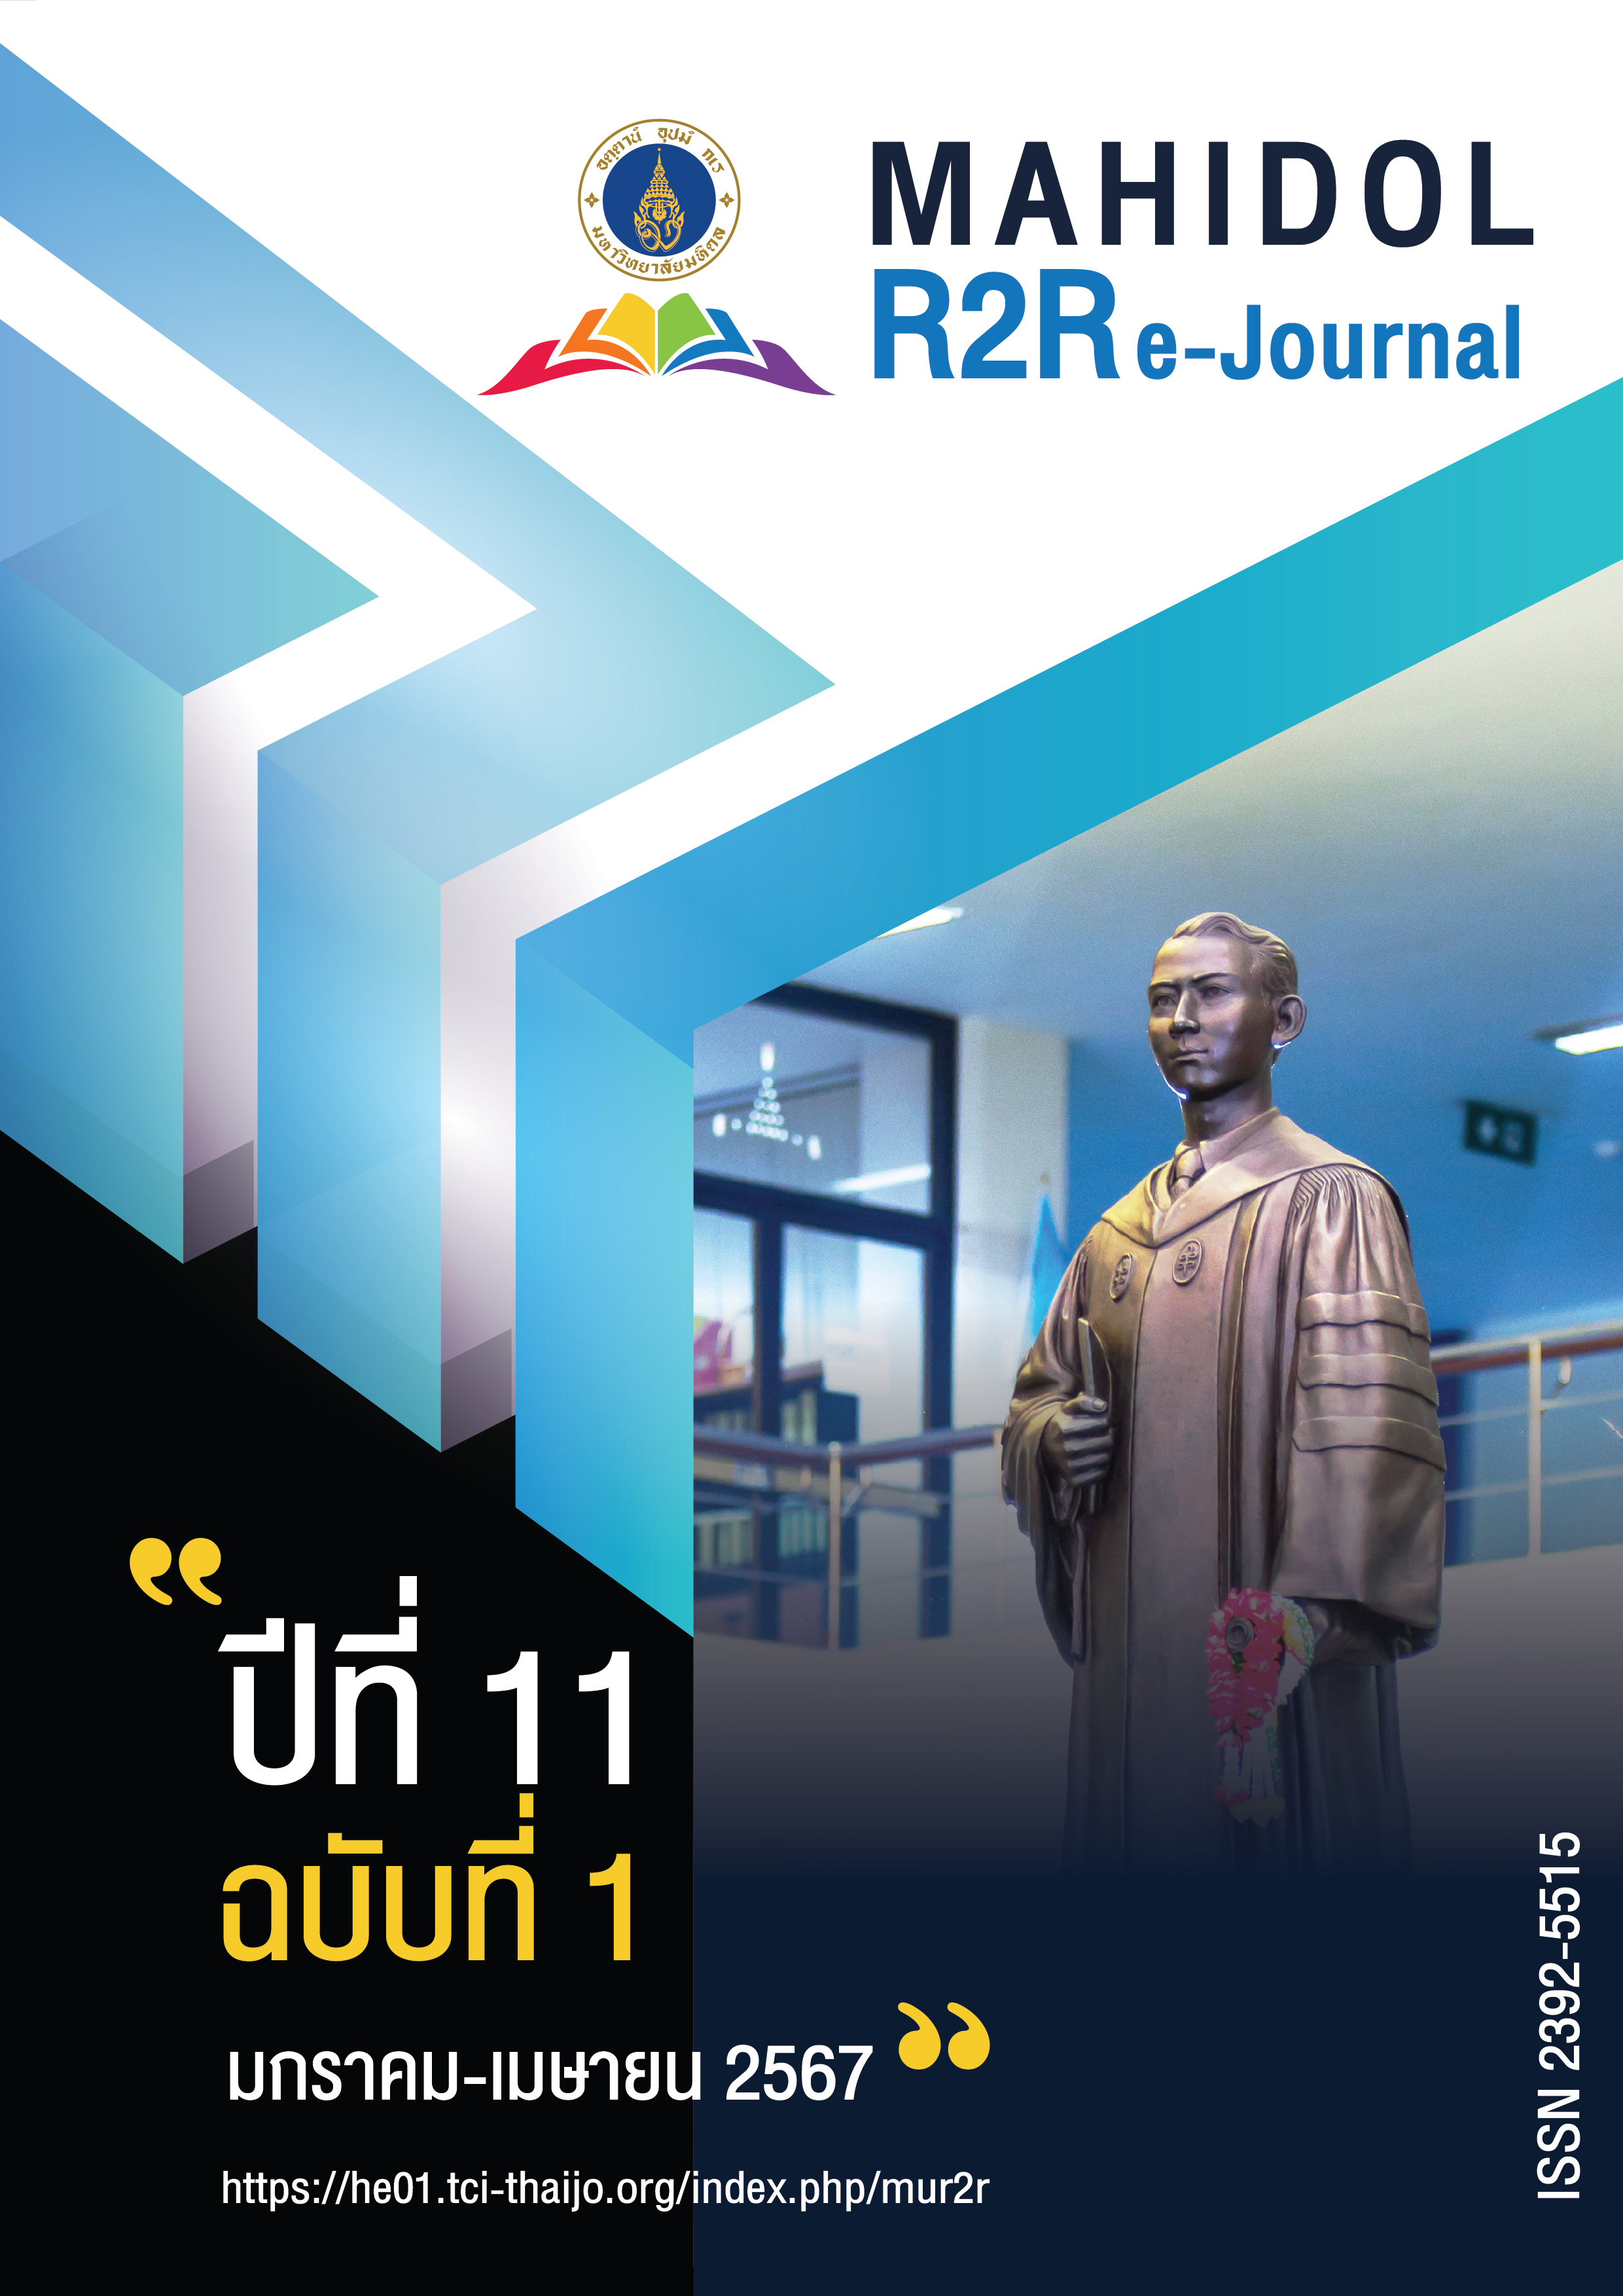 					ดู ปีที่ 11 ฉบับที่ 1 (2567): Mahidol R2R e-Journal
				